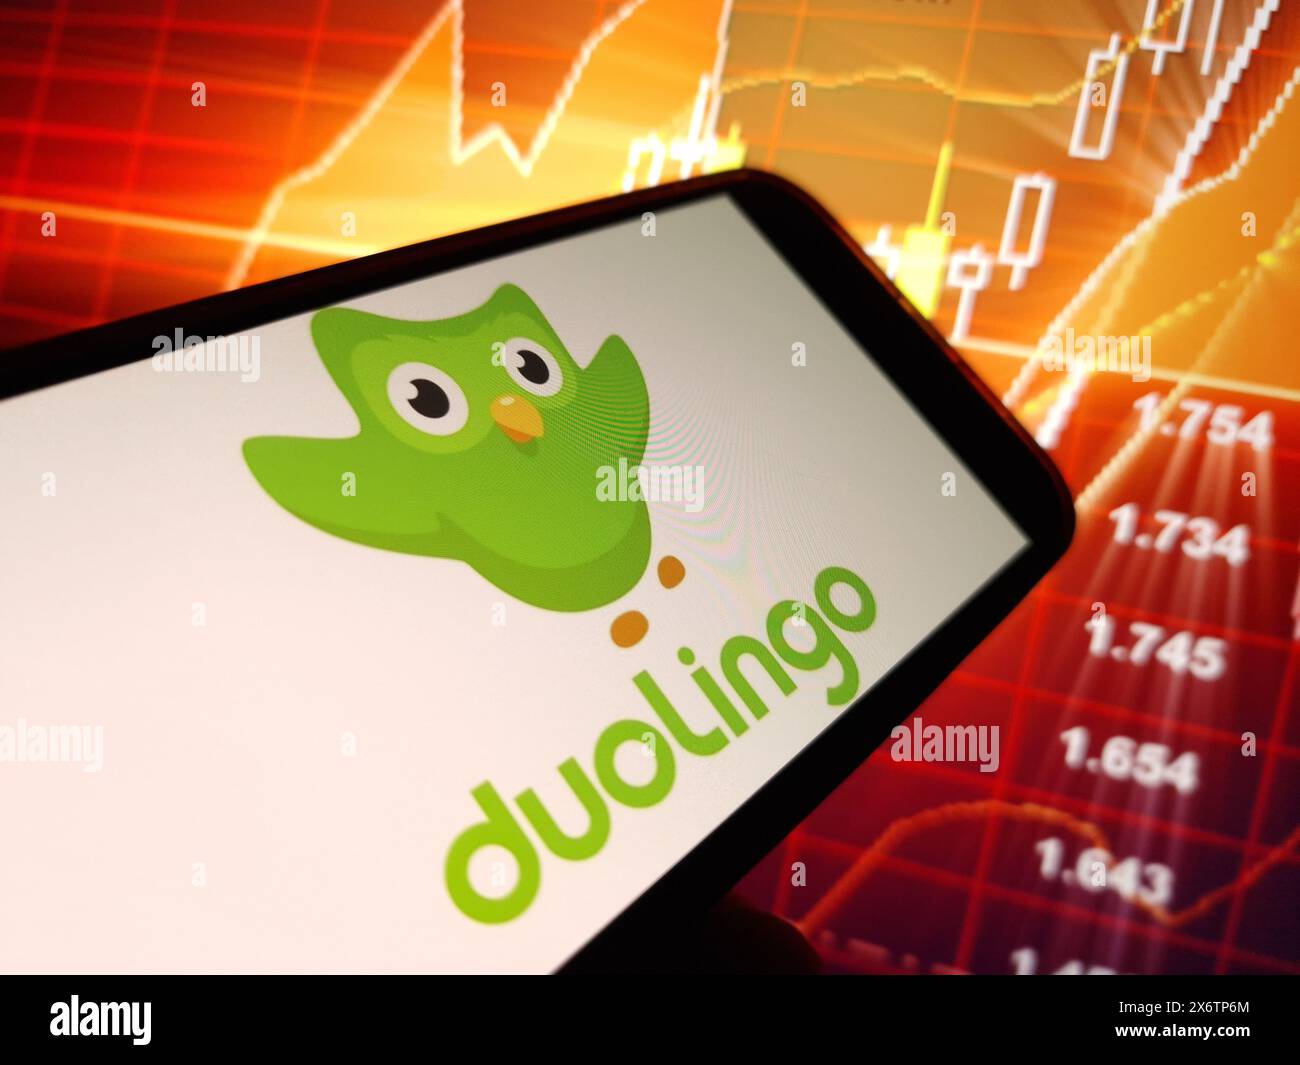 Konskie, Poland - May 15, 2024: Duolingo company logo displayed on mobile phone Stock Photo